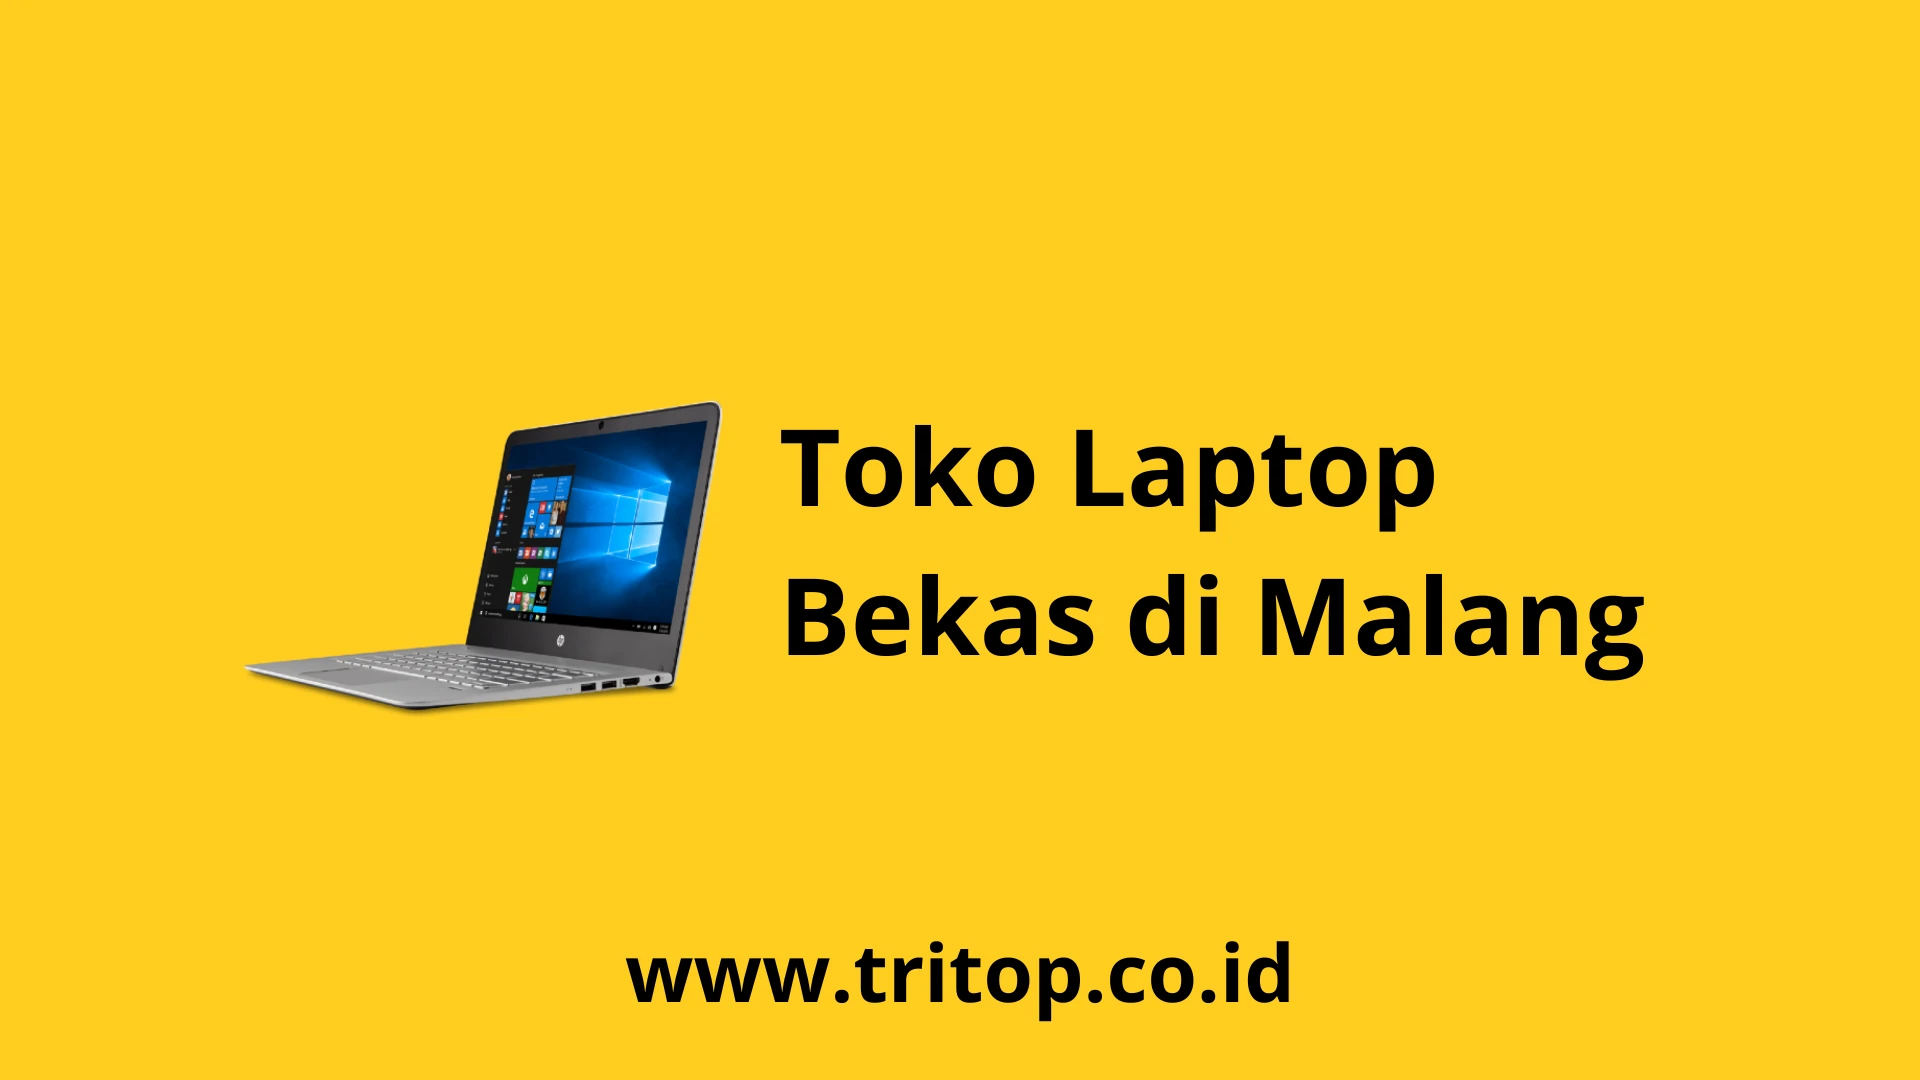 Toko Laptop Bekas Malang Tritop.co.id